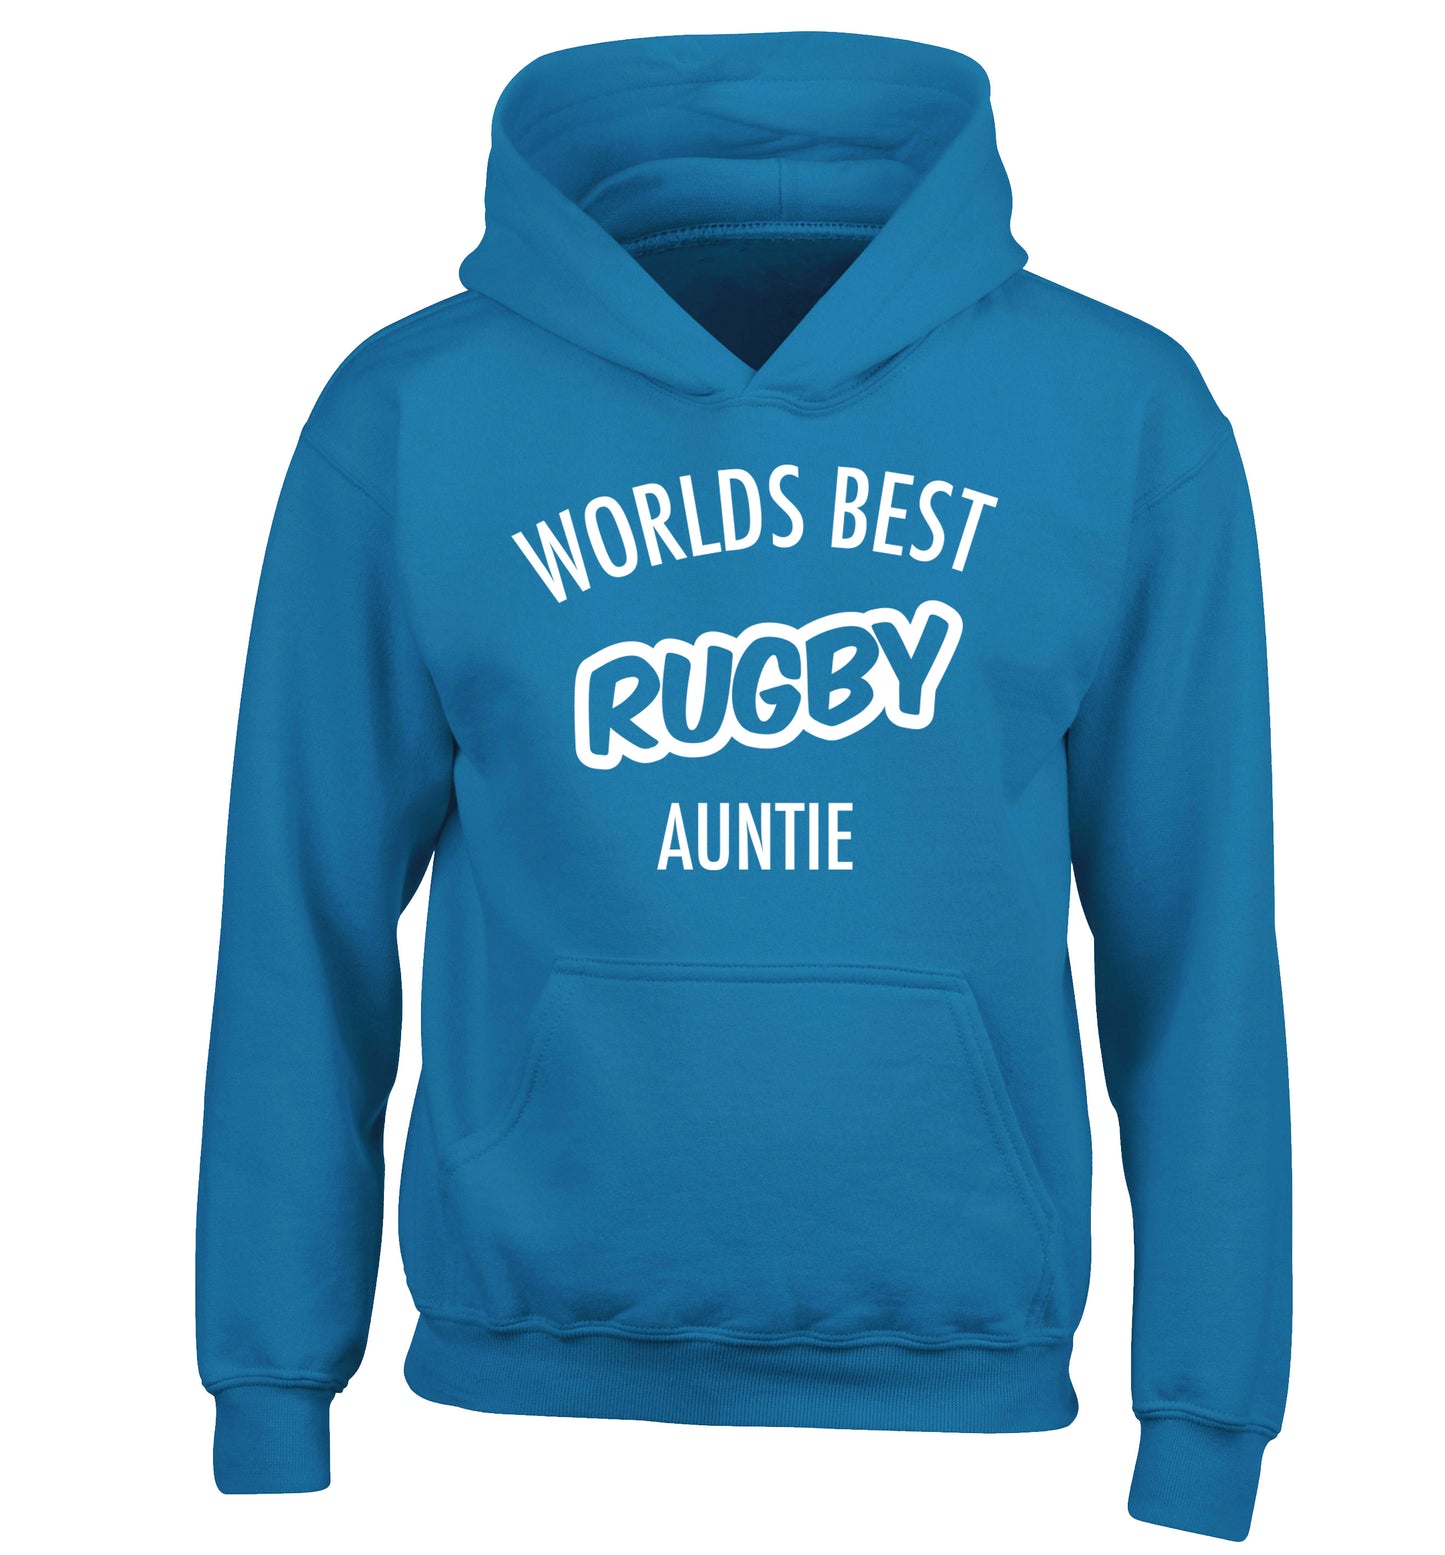 Worlds best rugby auntie children's blue hoodie 12-13 Years